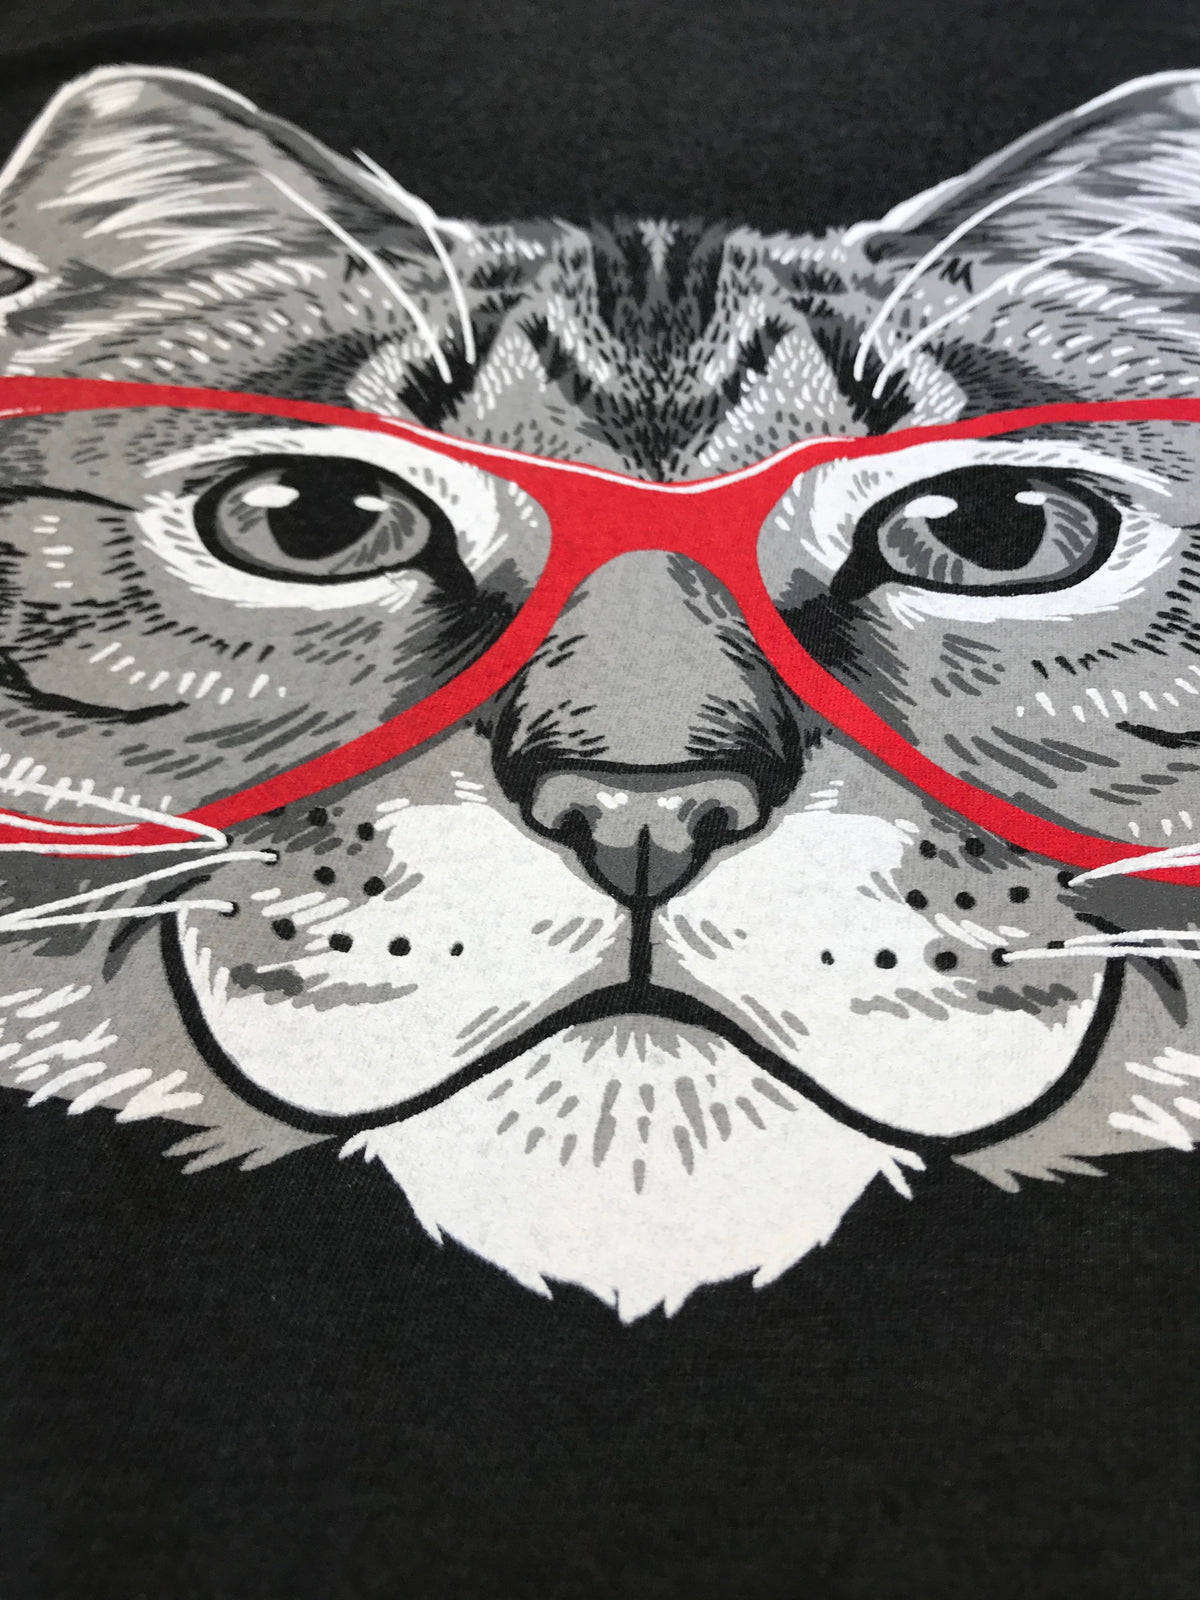 Red Linda Glasses Cat | Sassy Funny Kitty Belcher Cute V-neck T-shirt for Women